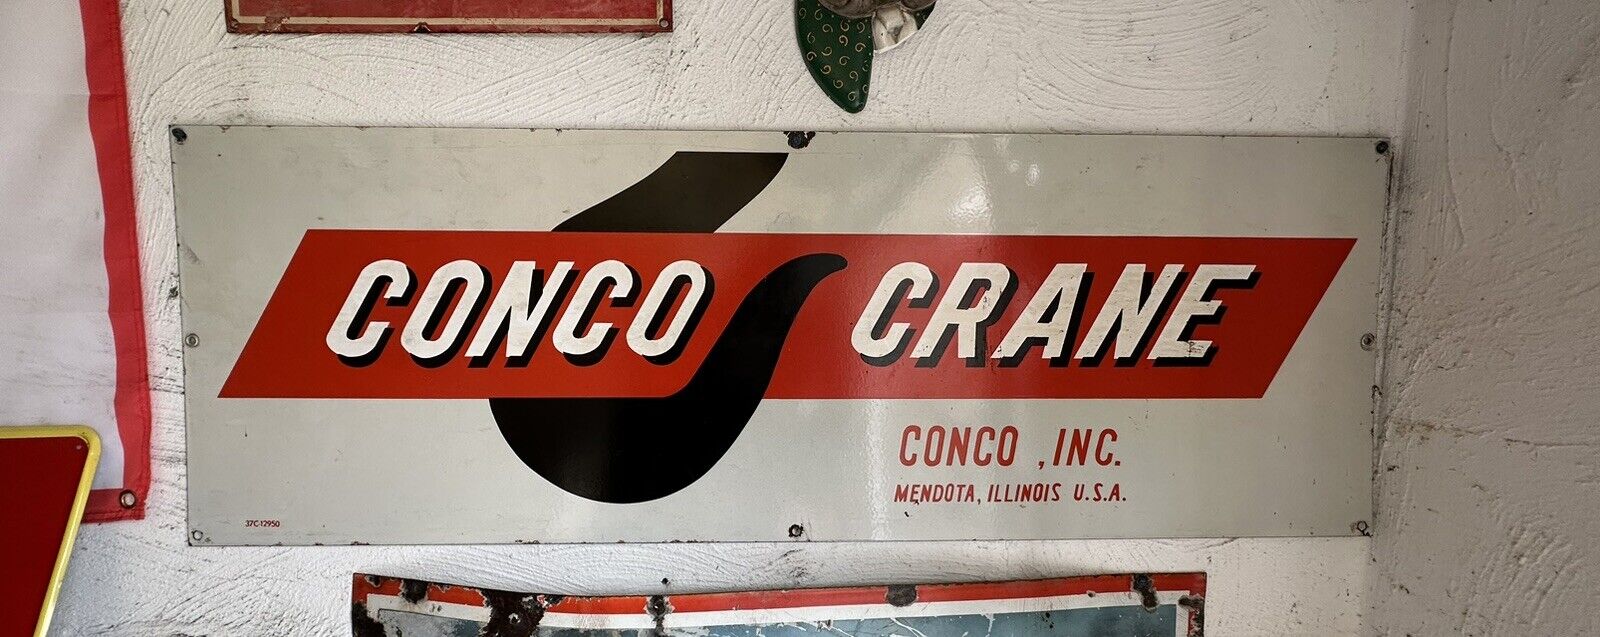 Rare Large Conco Crane Porcelain Sign Original Authentic Excellent Condition